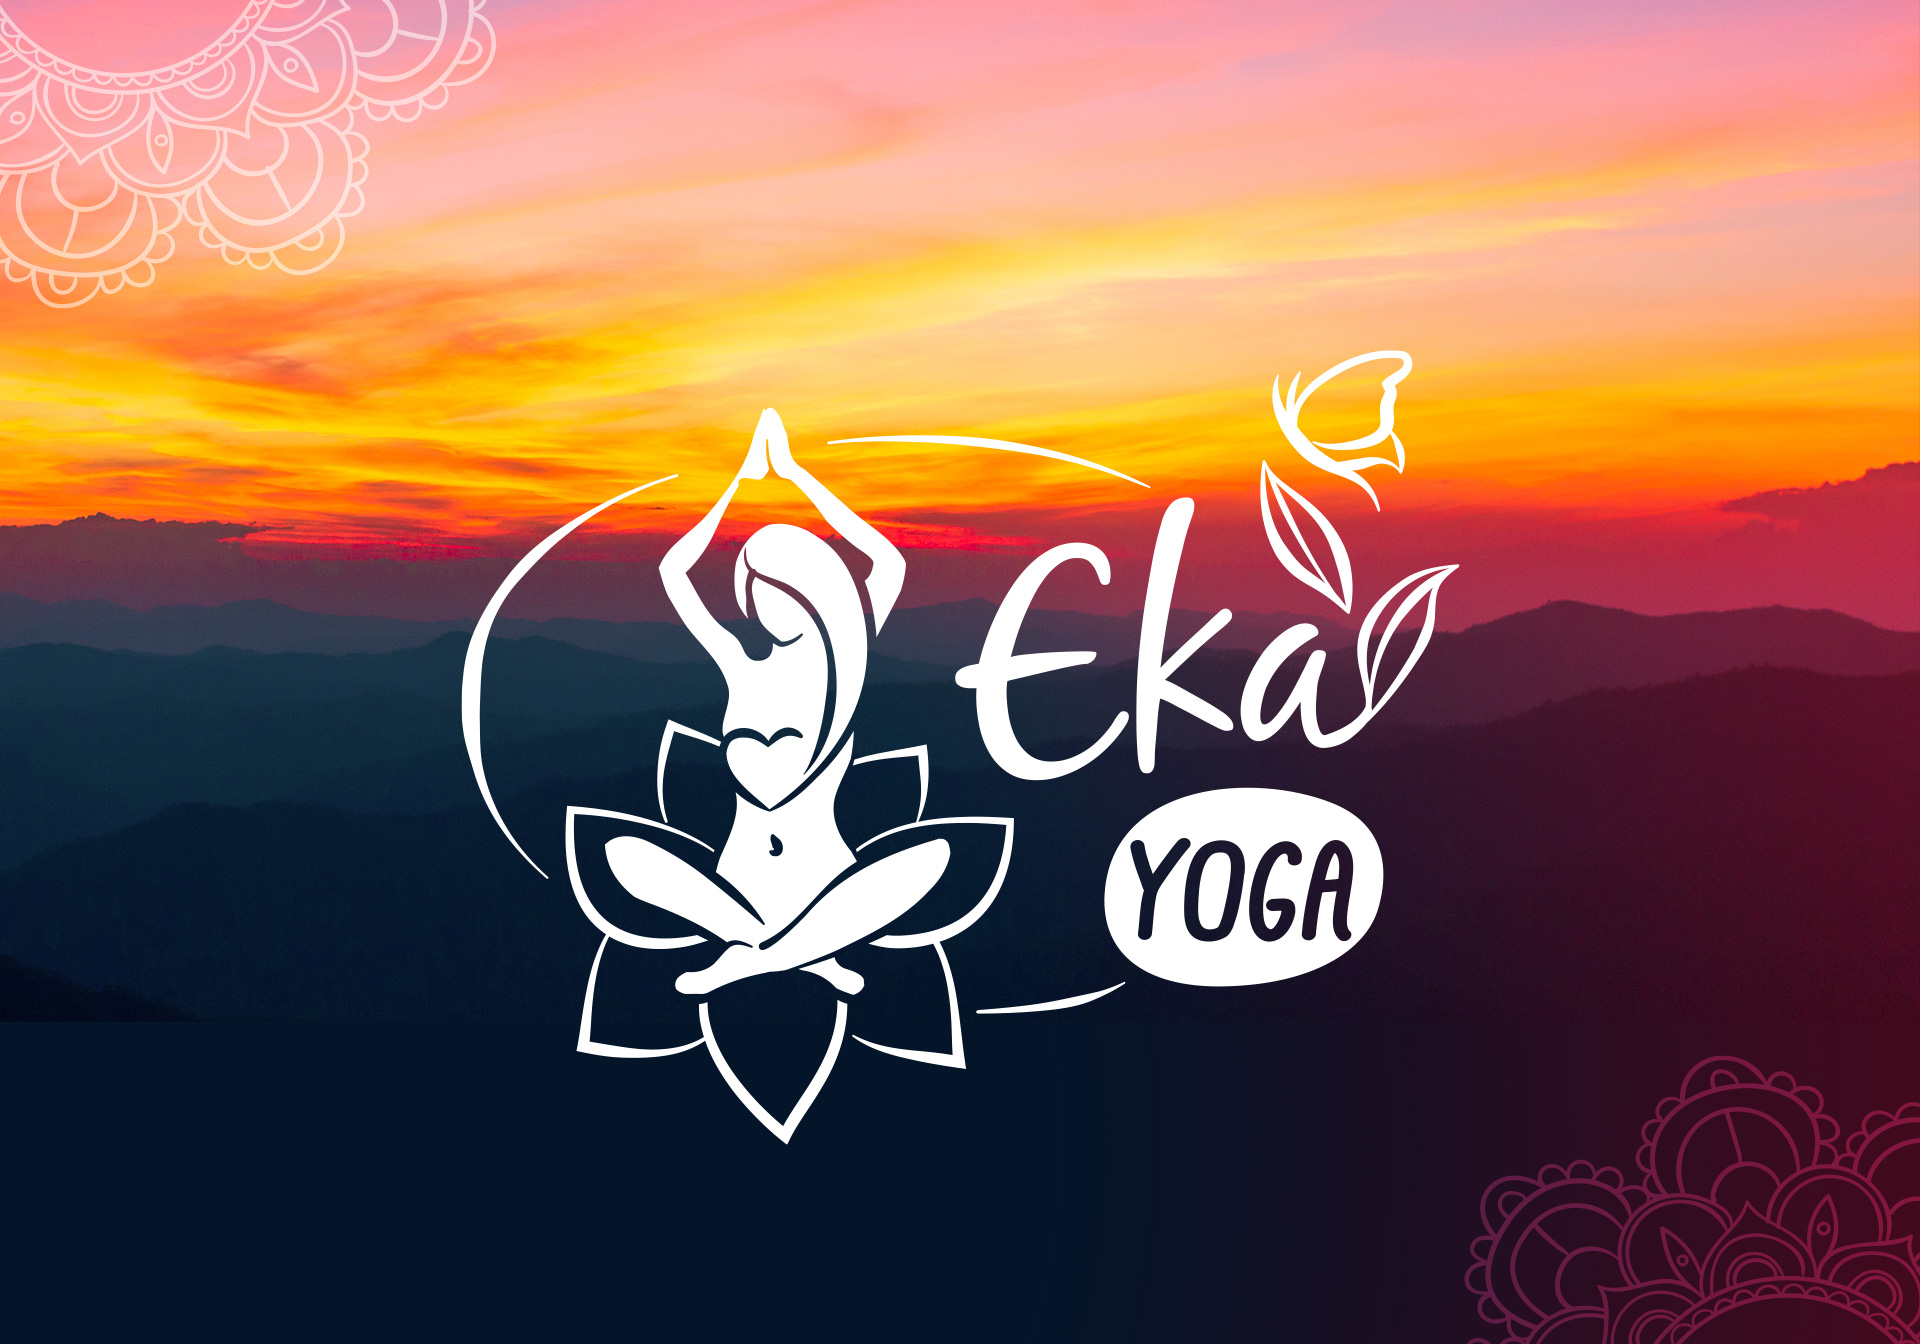 logo_eka_yoga